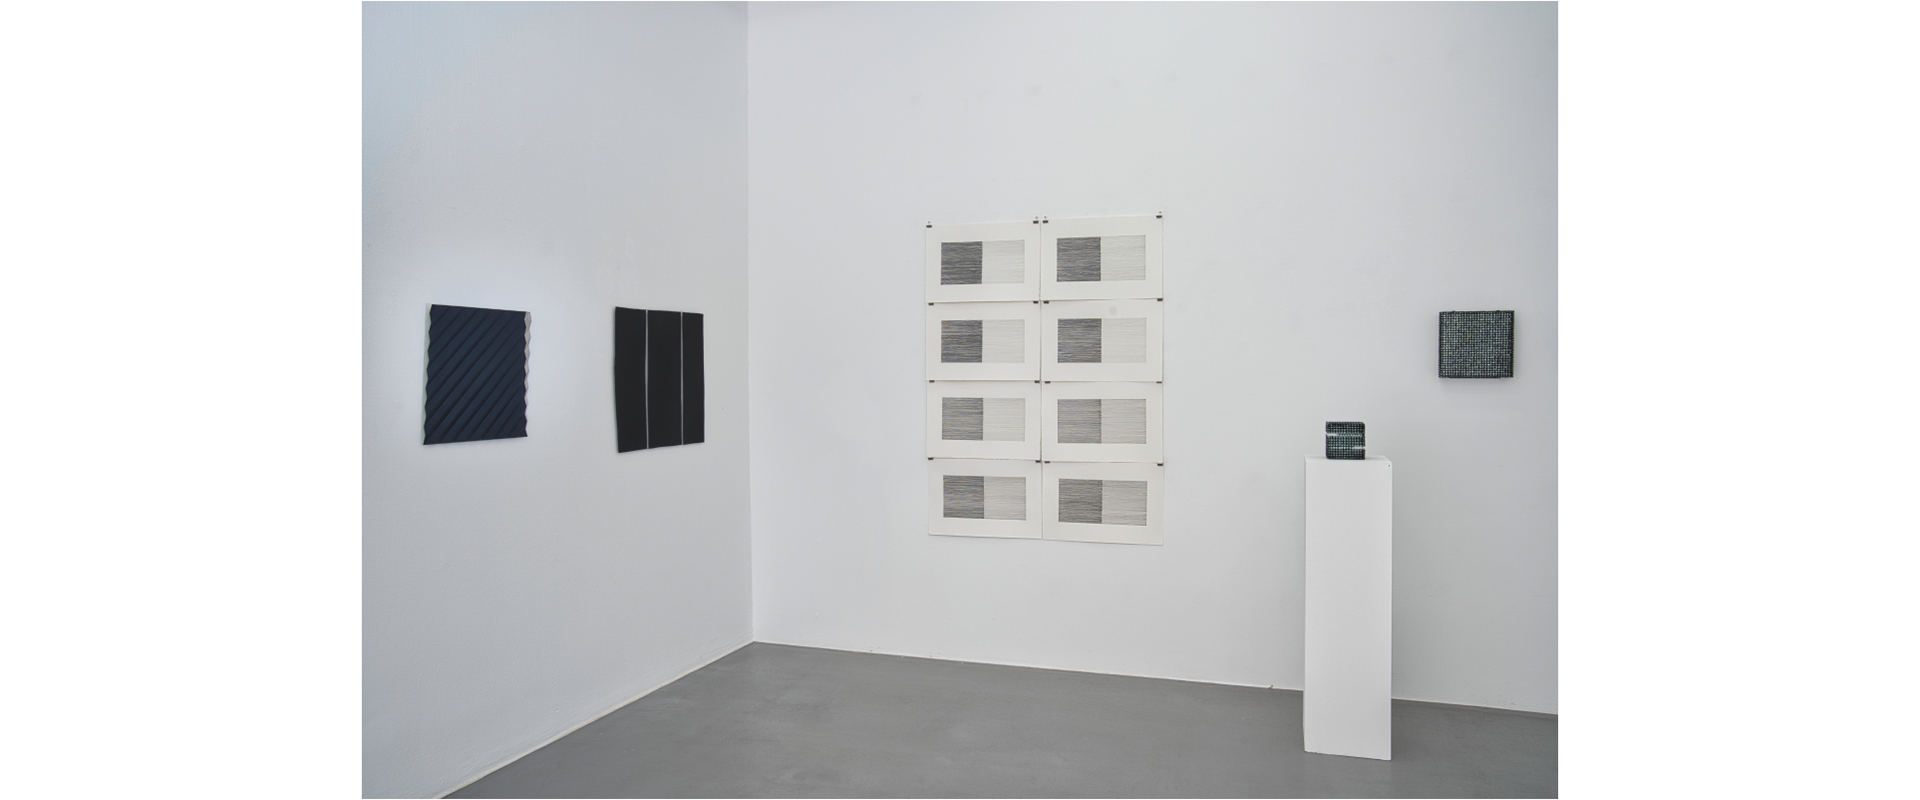 Ausstellungsansicht "Black is beautiful", Galerie Renate Bender 2021, Photo: Gary Thurner